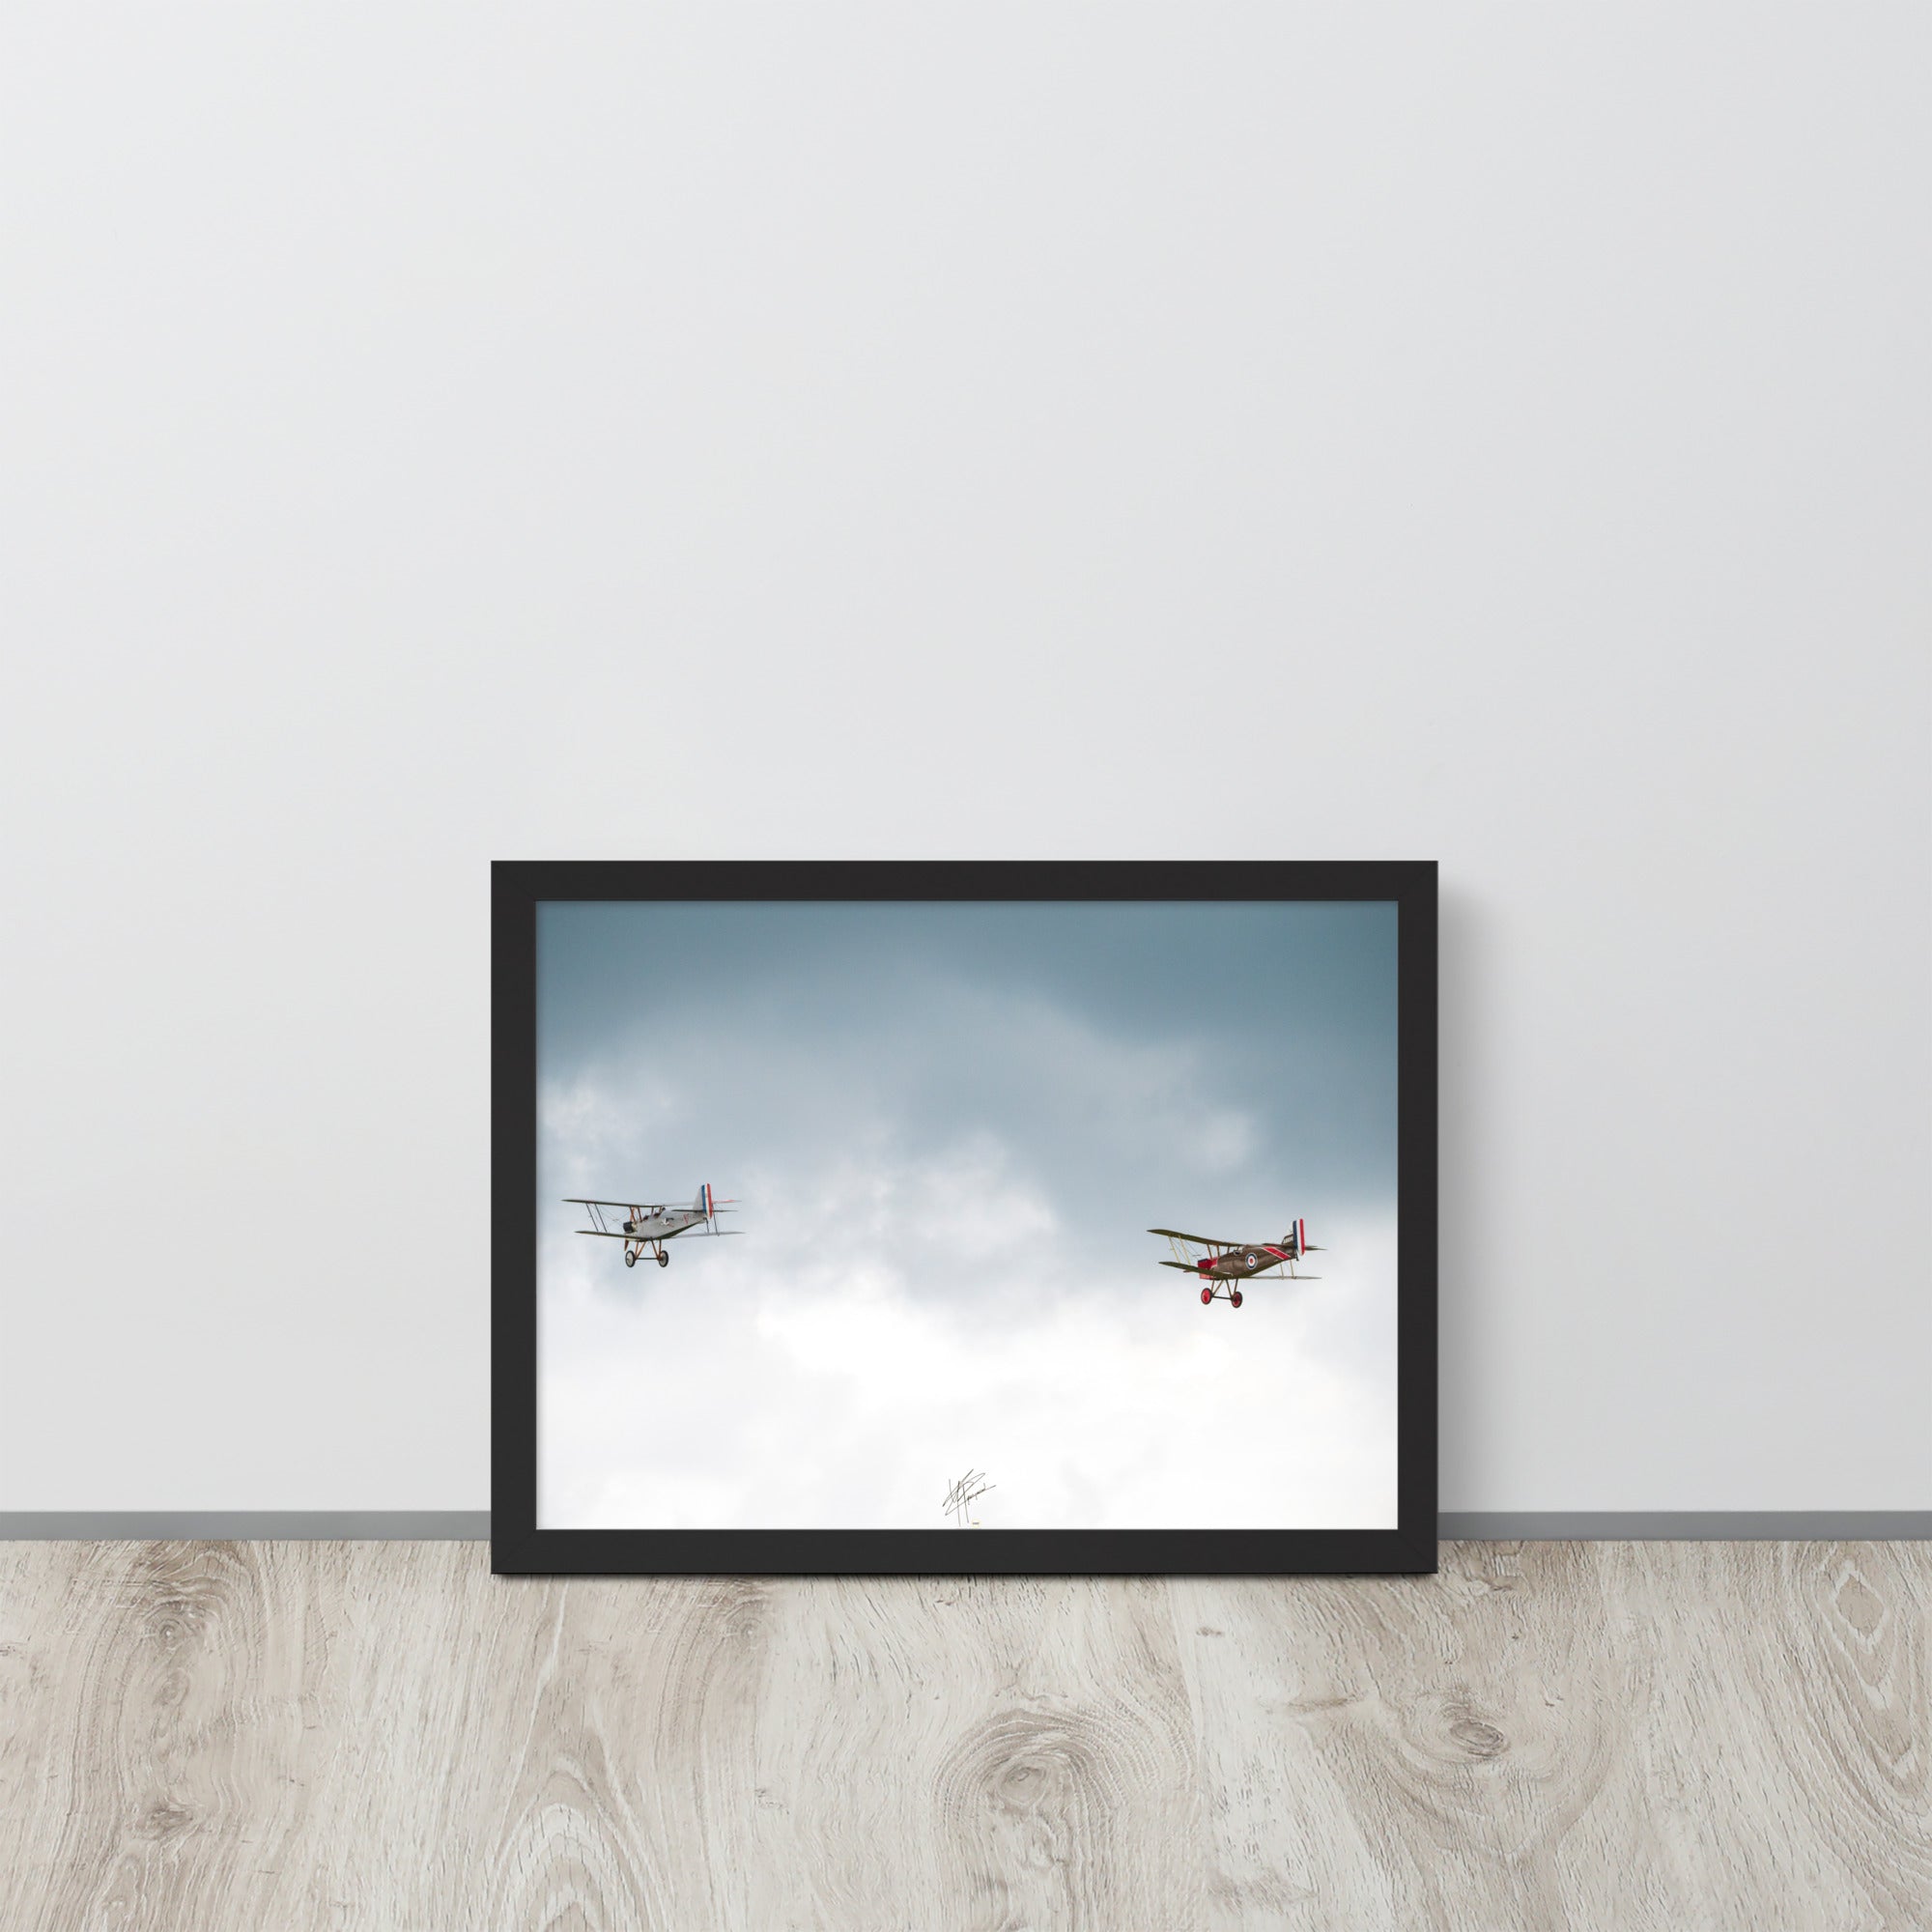 Deux avions de combat de la Première Guerre Mondiale s'élevant contre un ciel gris-blanc, encapsulant l'héroïsme de l'époque. Poster encadré de haute qualité signé 'Tagazou'.